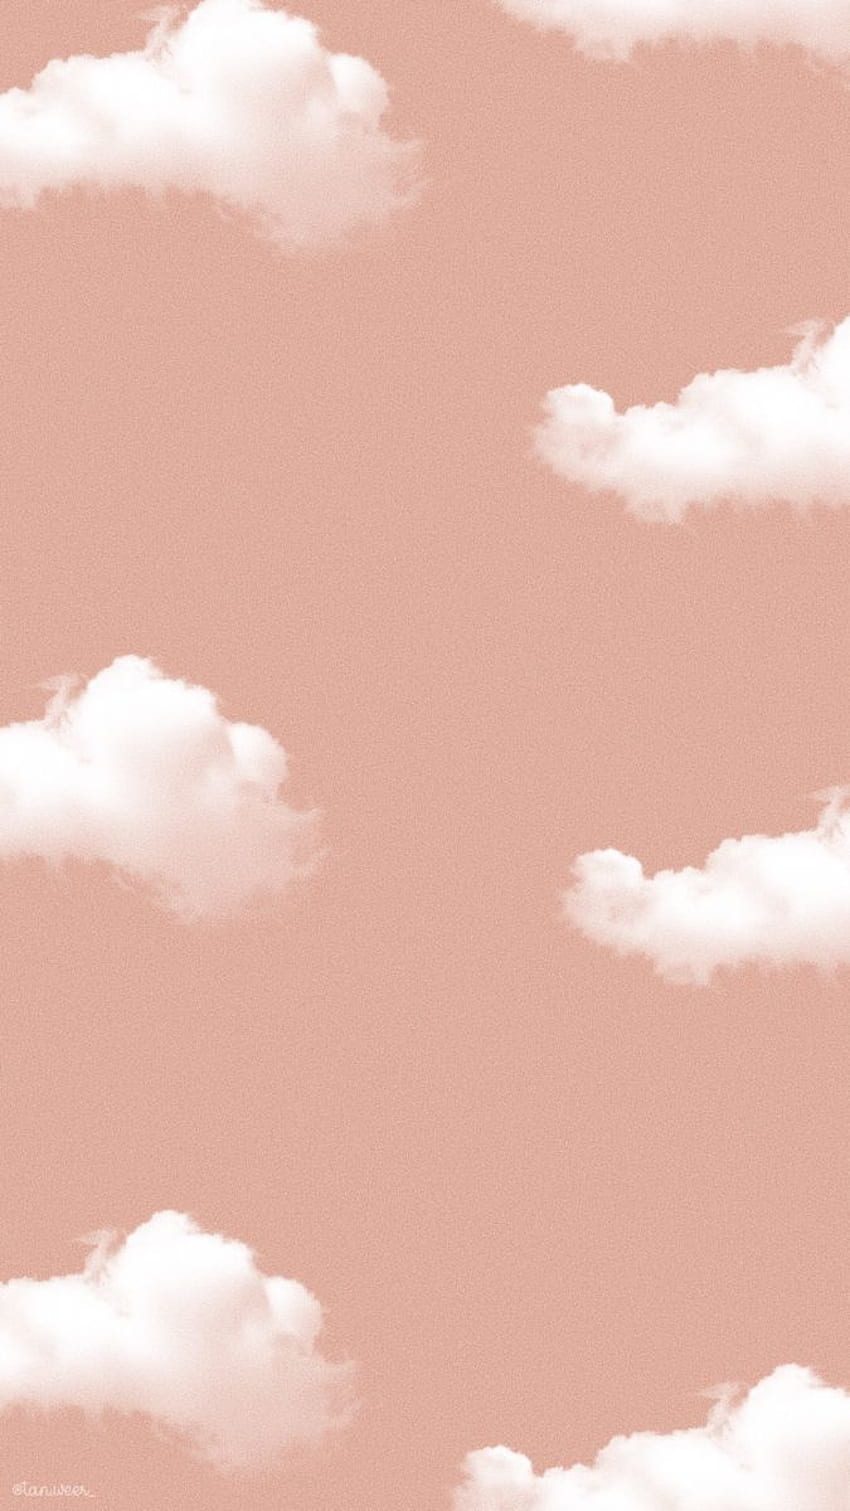 Hình nền Cloud Instagram đẹp với màu xanh dịu nhẹ sẽ khiến cho mọi bức ảnh của bạn trở nên lung linh và thần thái hơn. Hãy cập nhật ngay những mẫu hình nền đẹp này để làm nền cho tài khoản Instagram của bạn và thu hút người theo dõi hơn bao giờ hết.